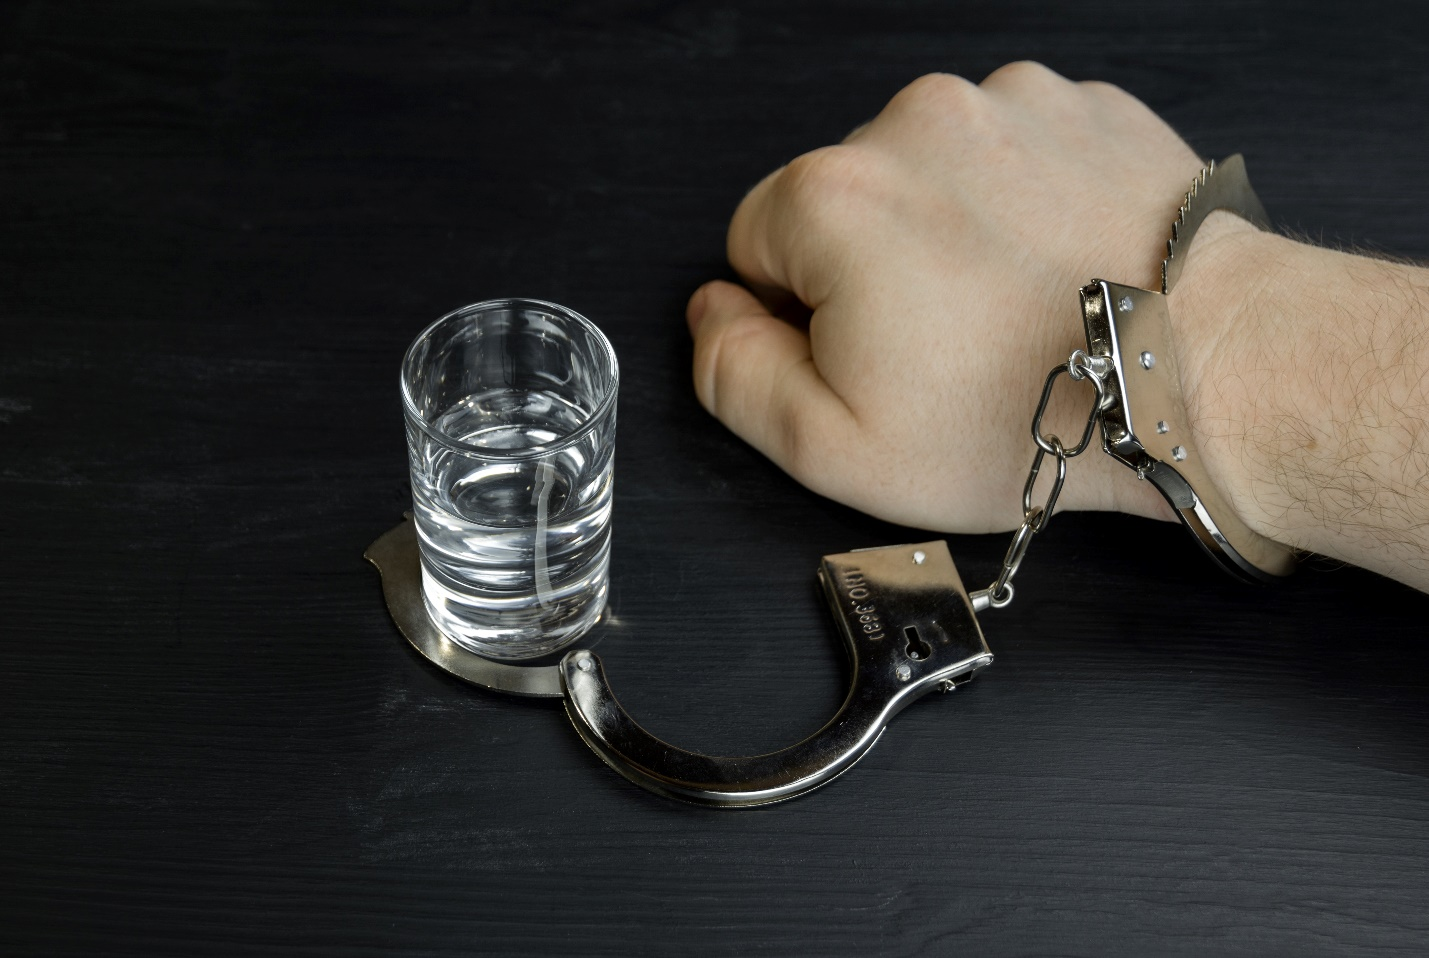 a person in handcuffs